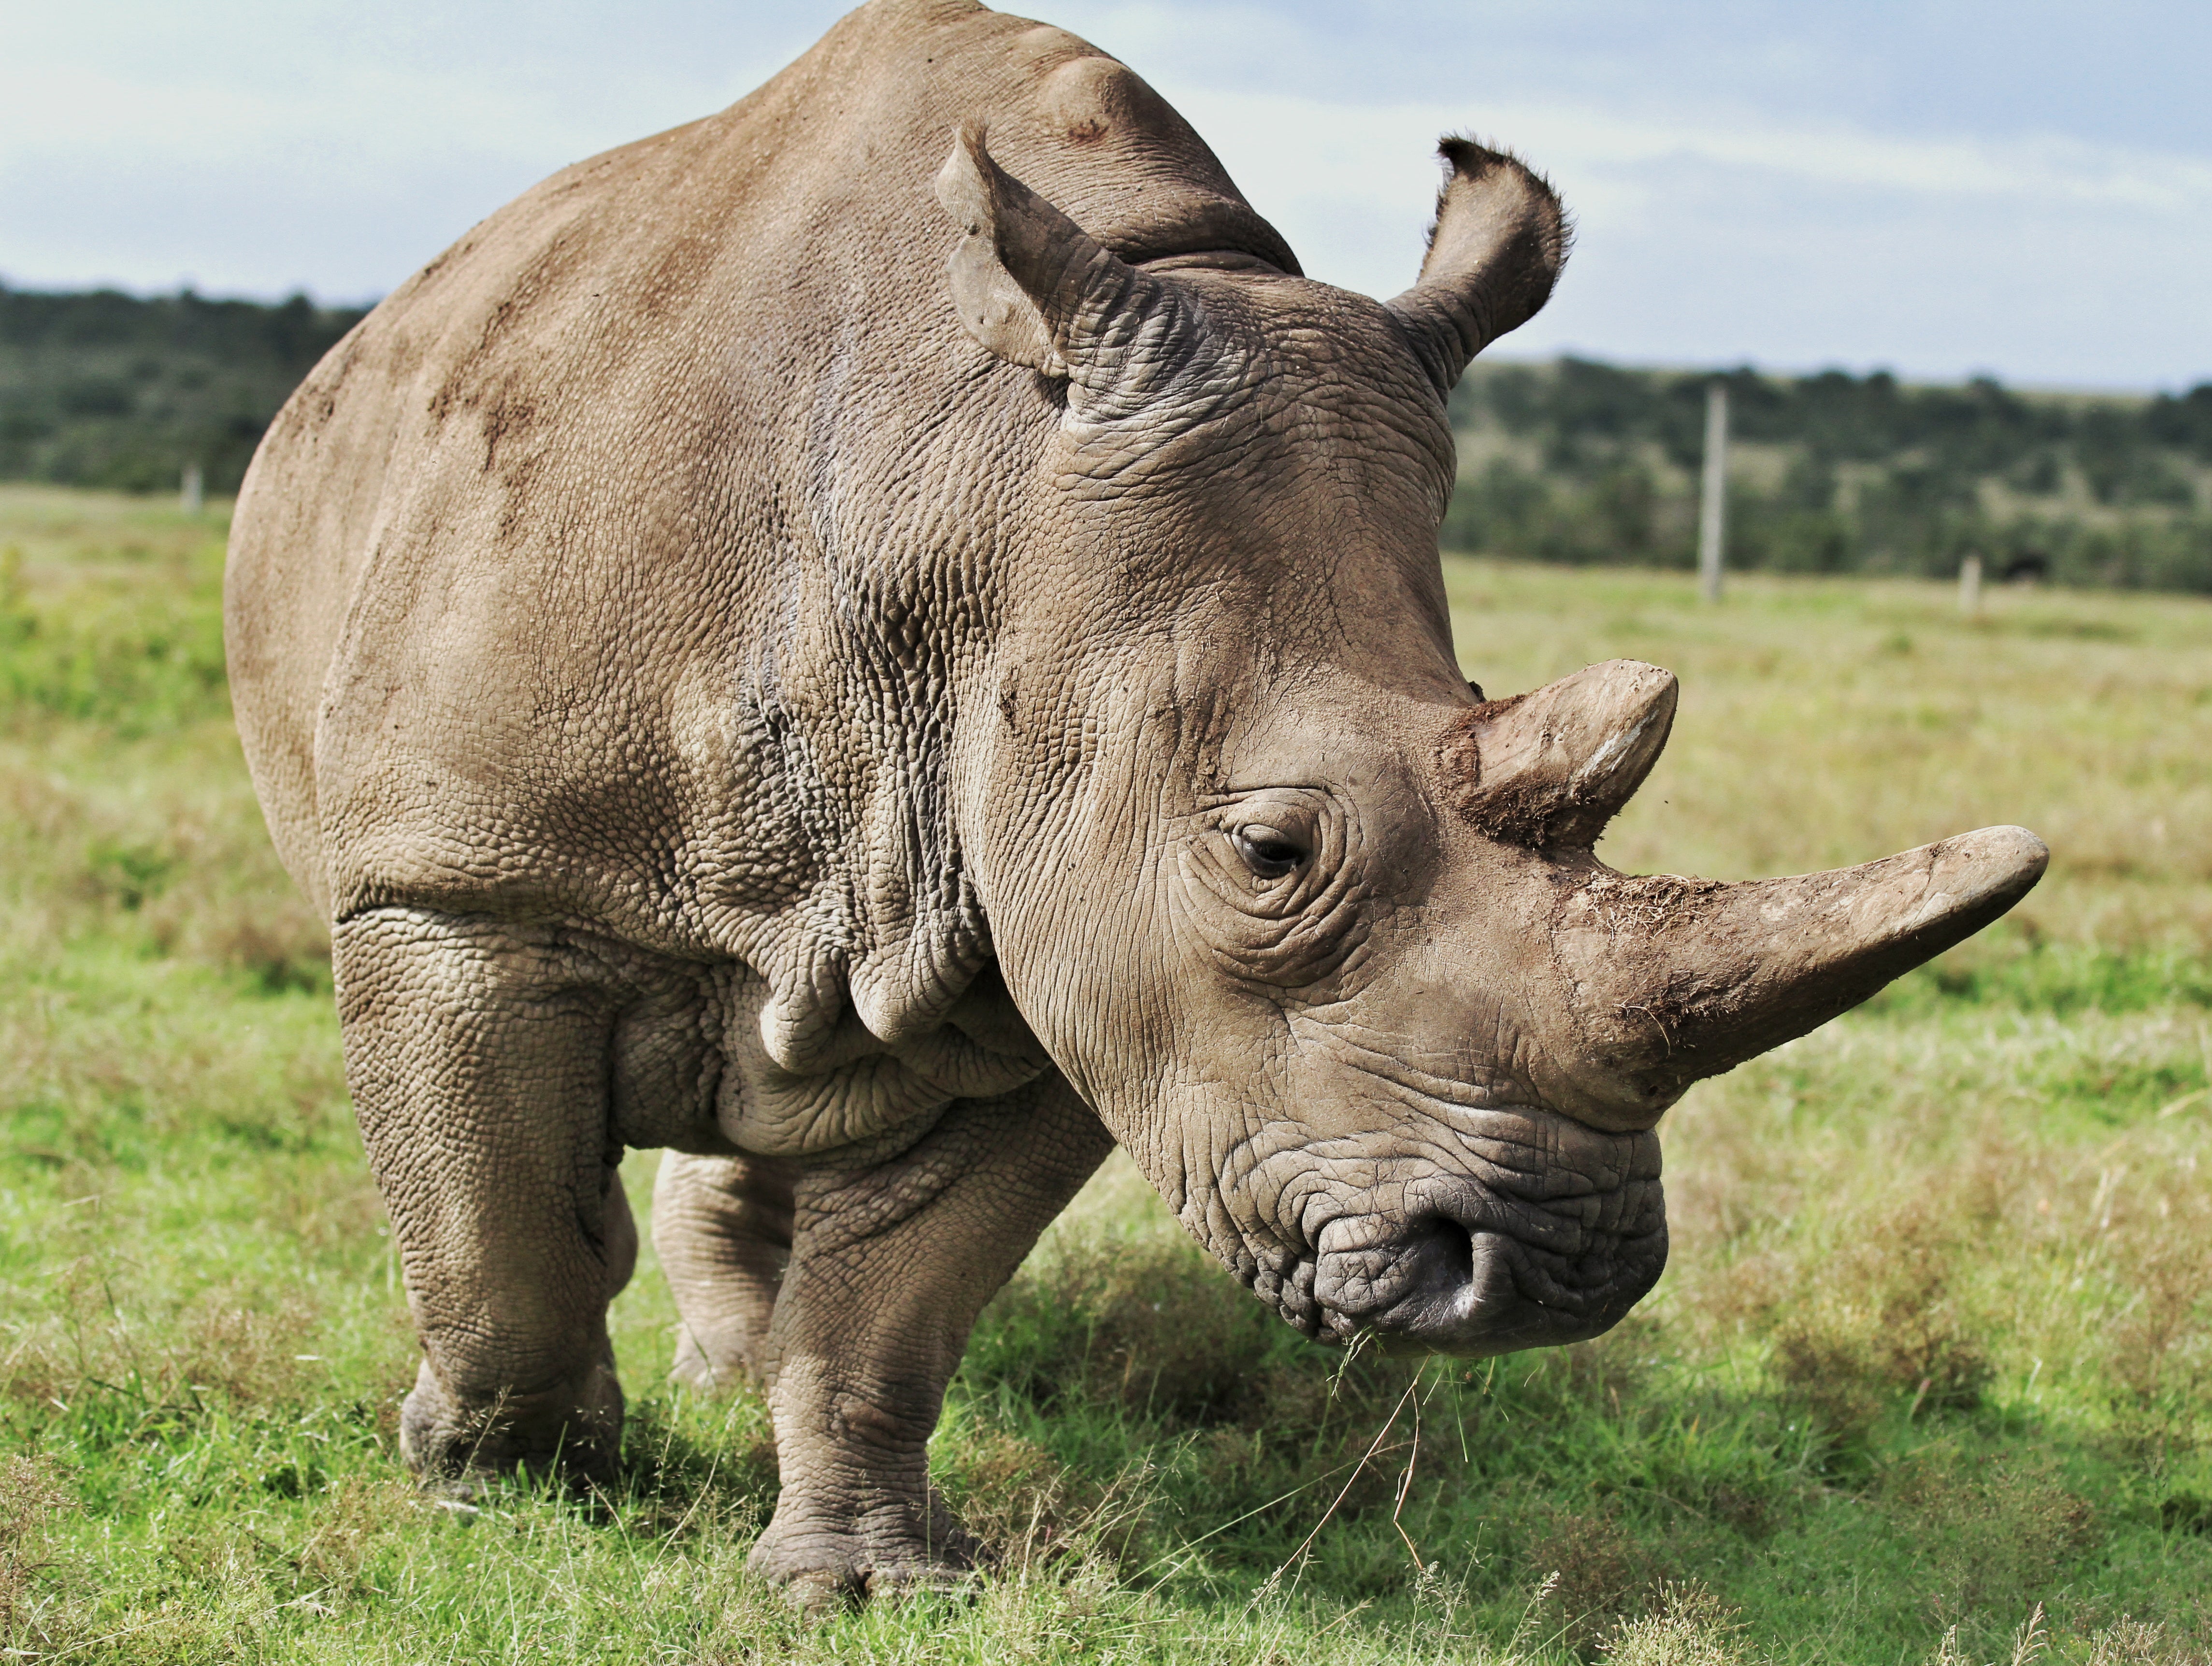 Uno de los últimos rinocerontes blancos del norte que quedan, uno de los animales terrestres más grandes de África. La caza furtiva y los cambios en el hábitat del rinoceronte han hecho que la población casi desaparezca